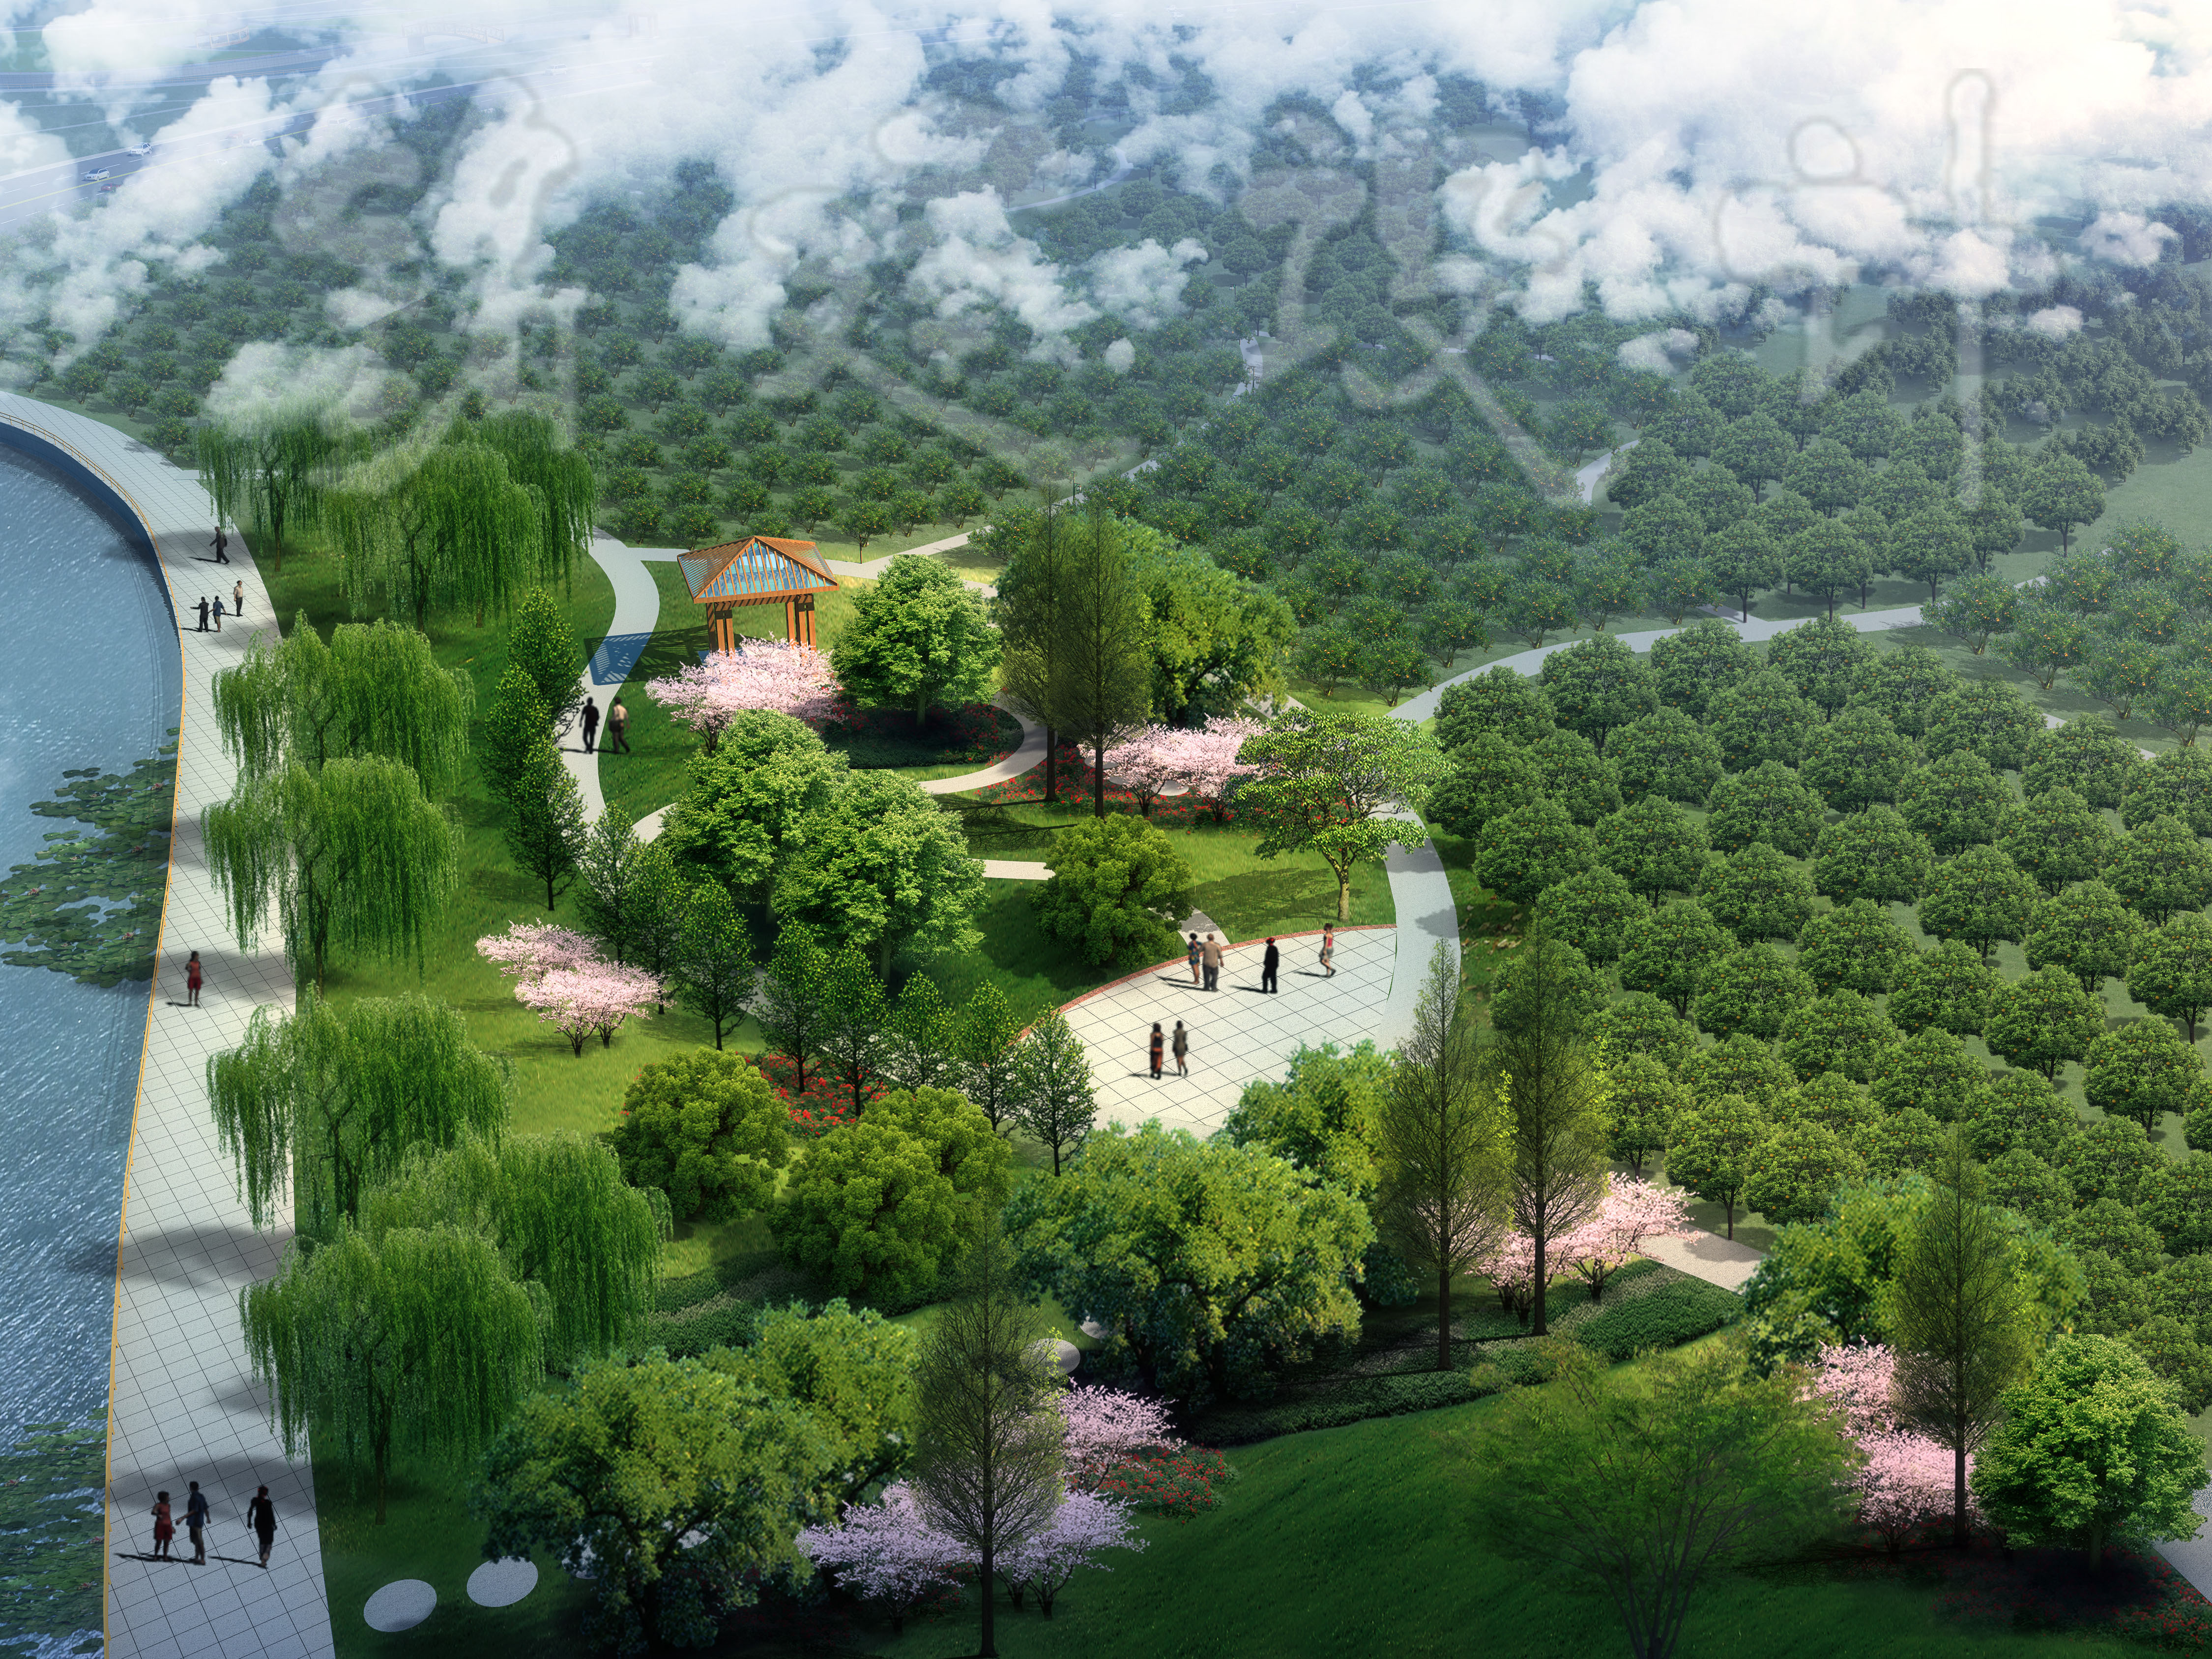 云南省富宁县者桑乡景观广场,步行街,沿河景观设计图片